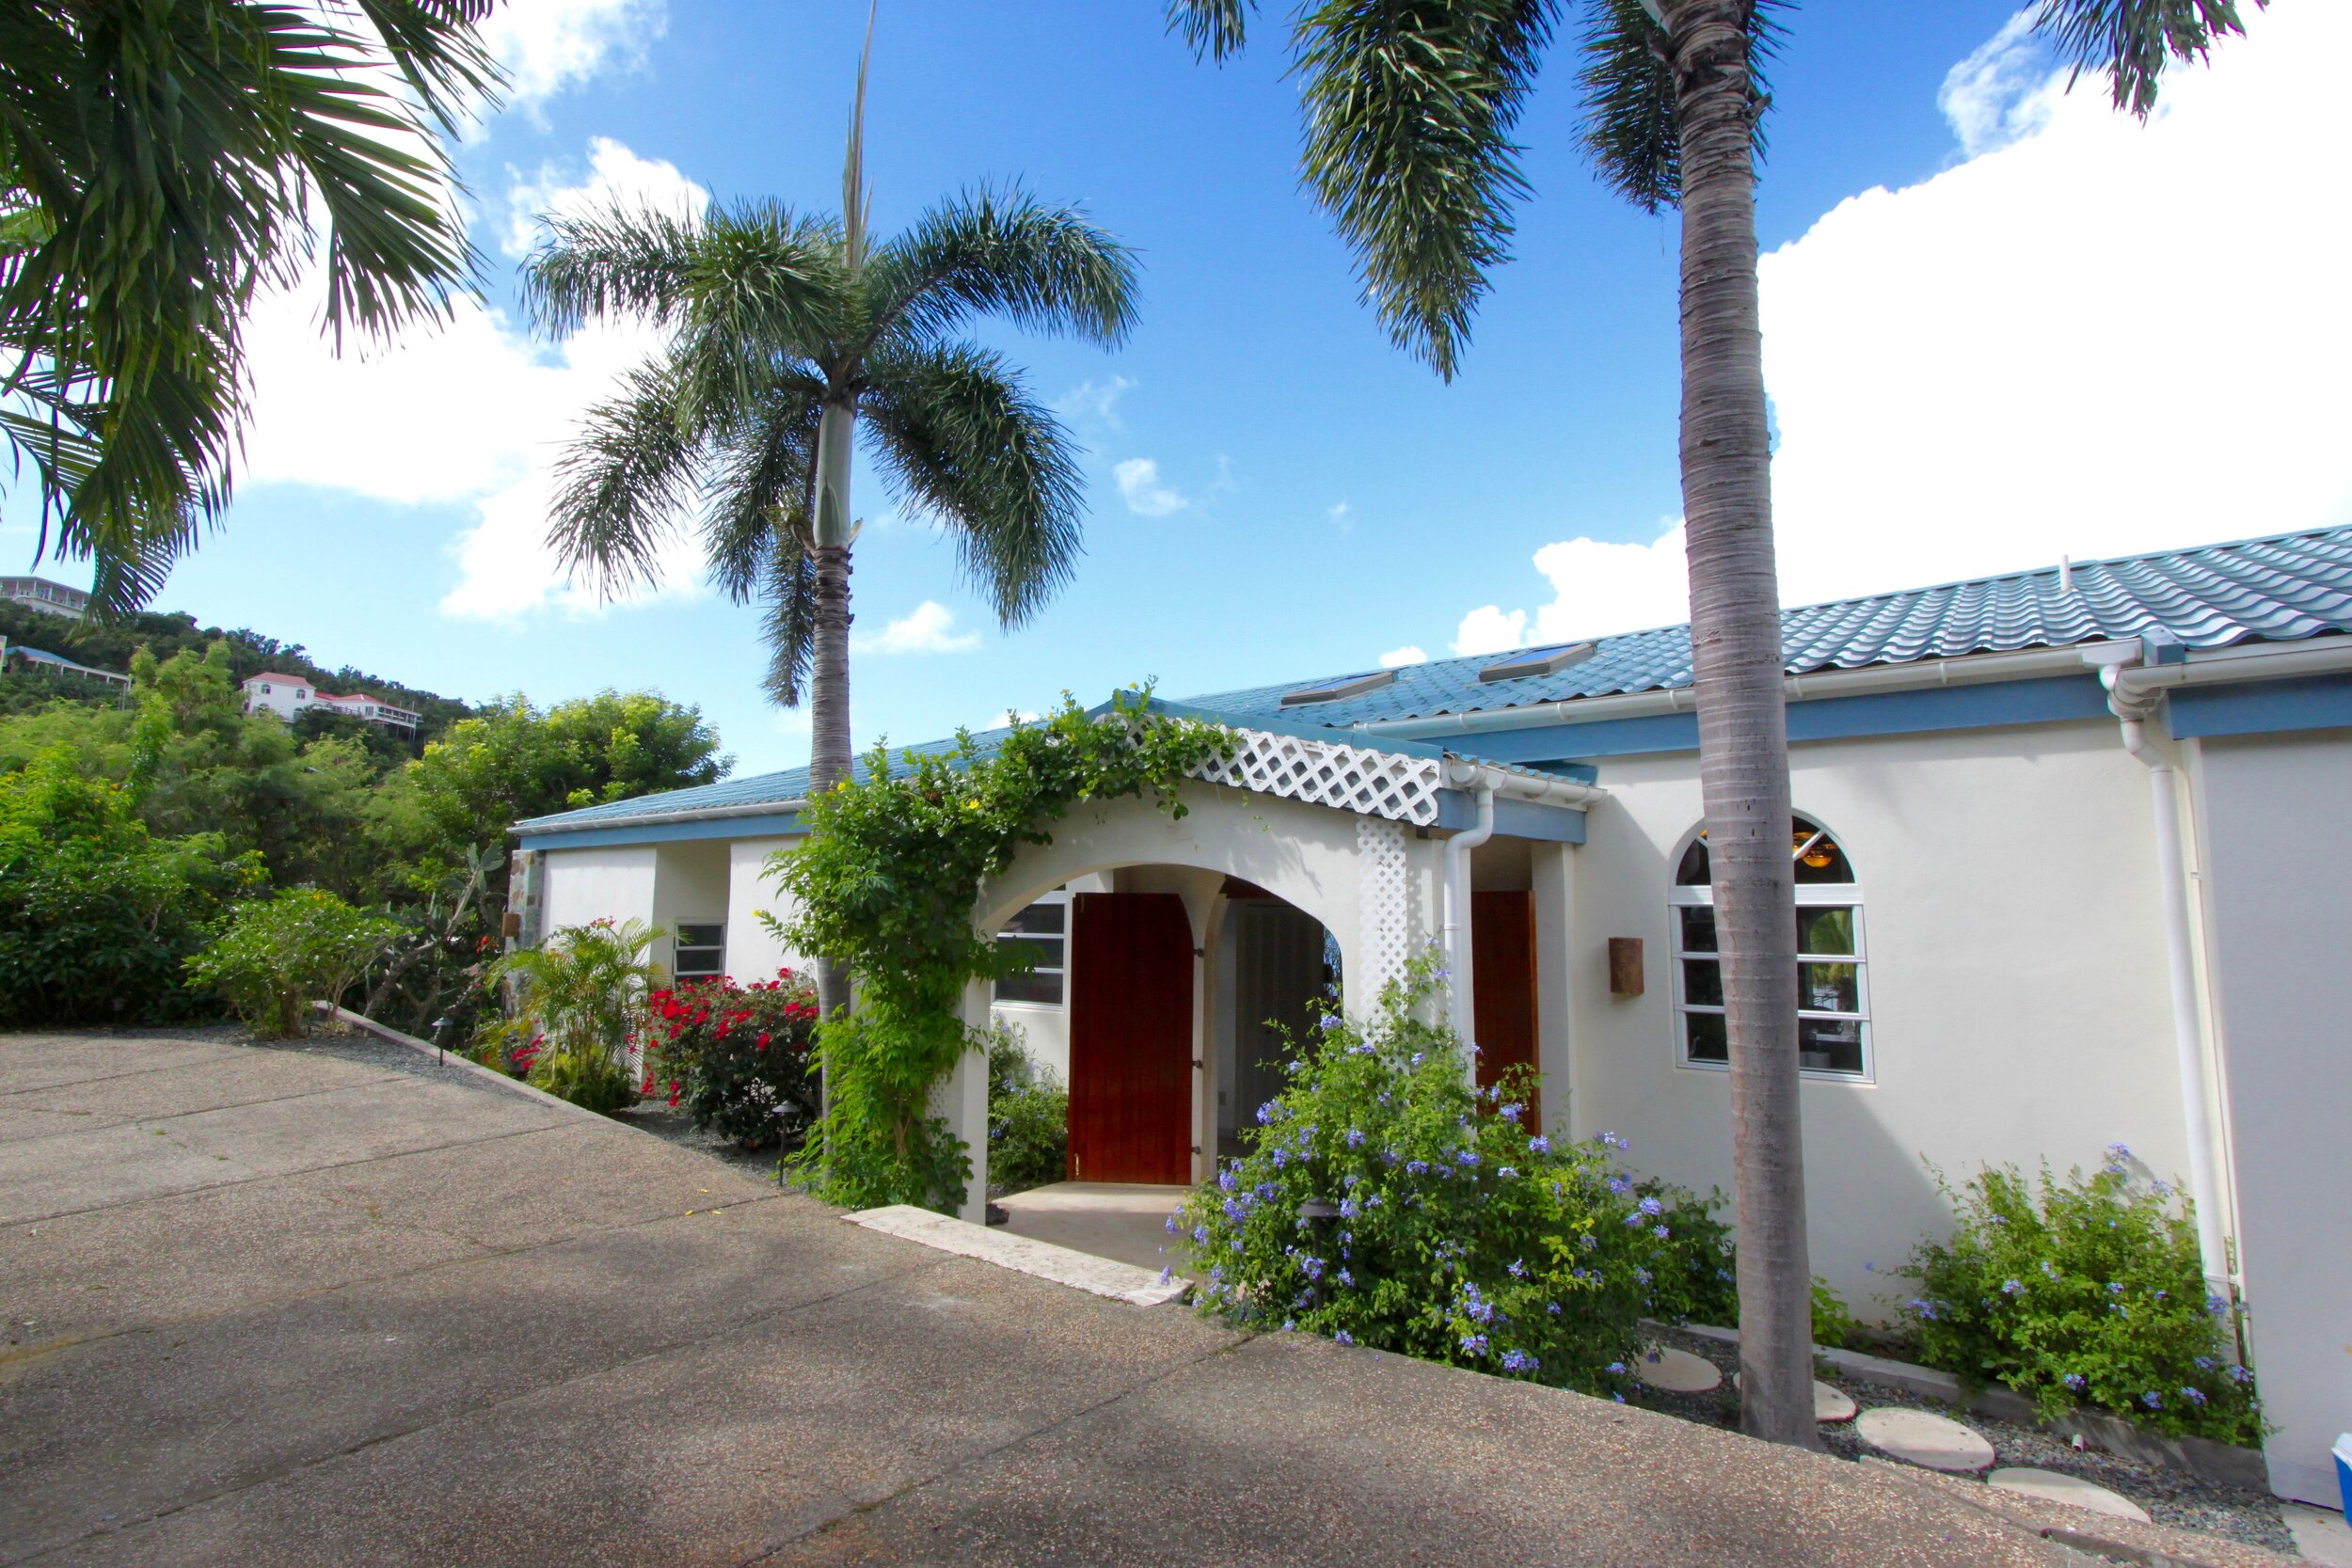 Caribbean Villa, St John Villa, Virgin Islands Villa 24 (Copy)